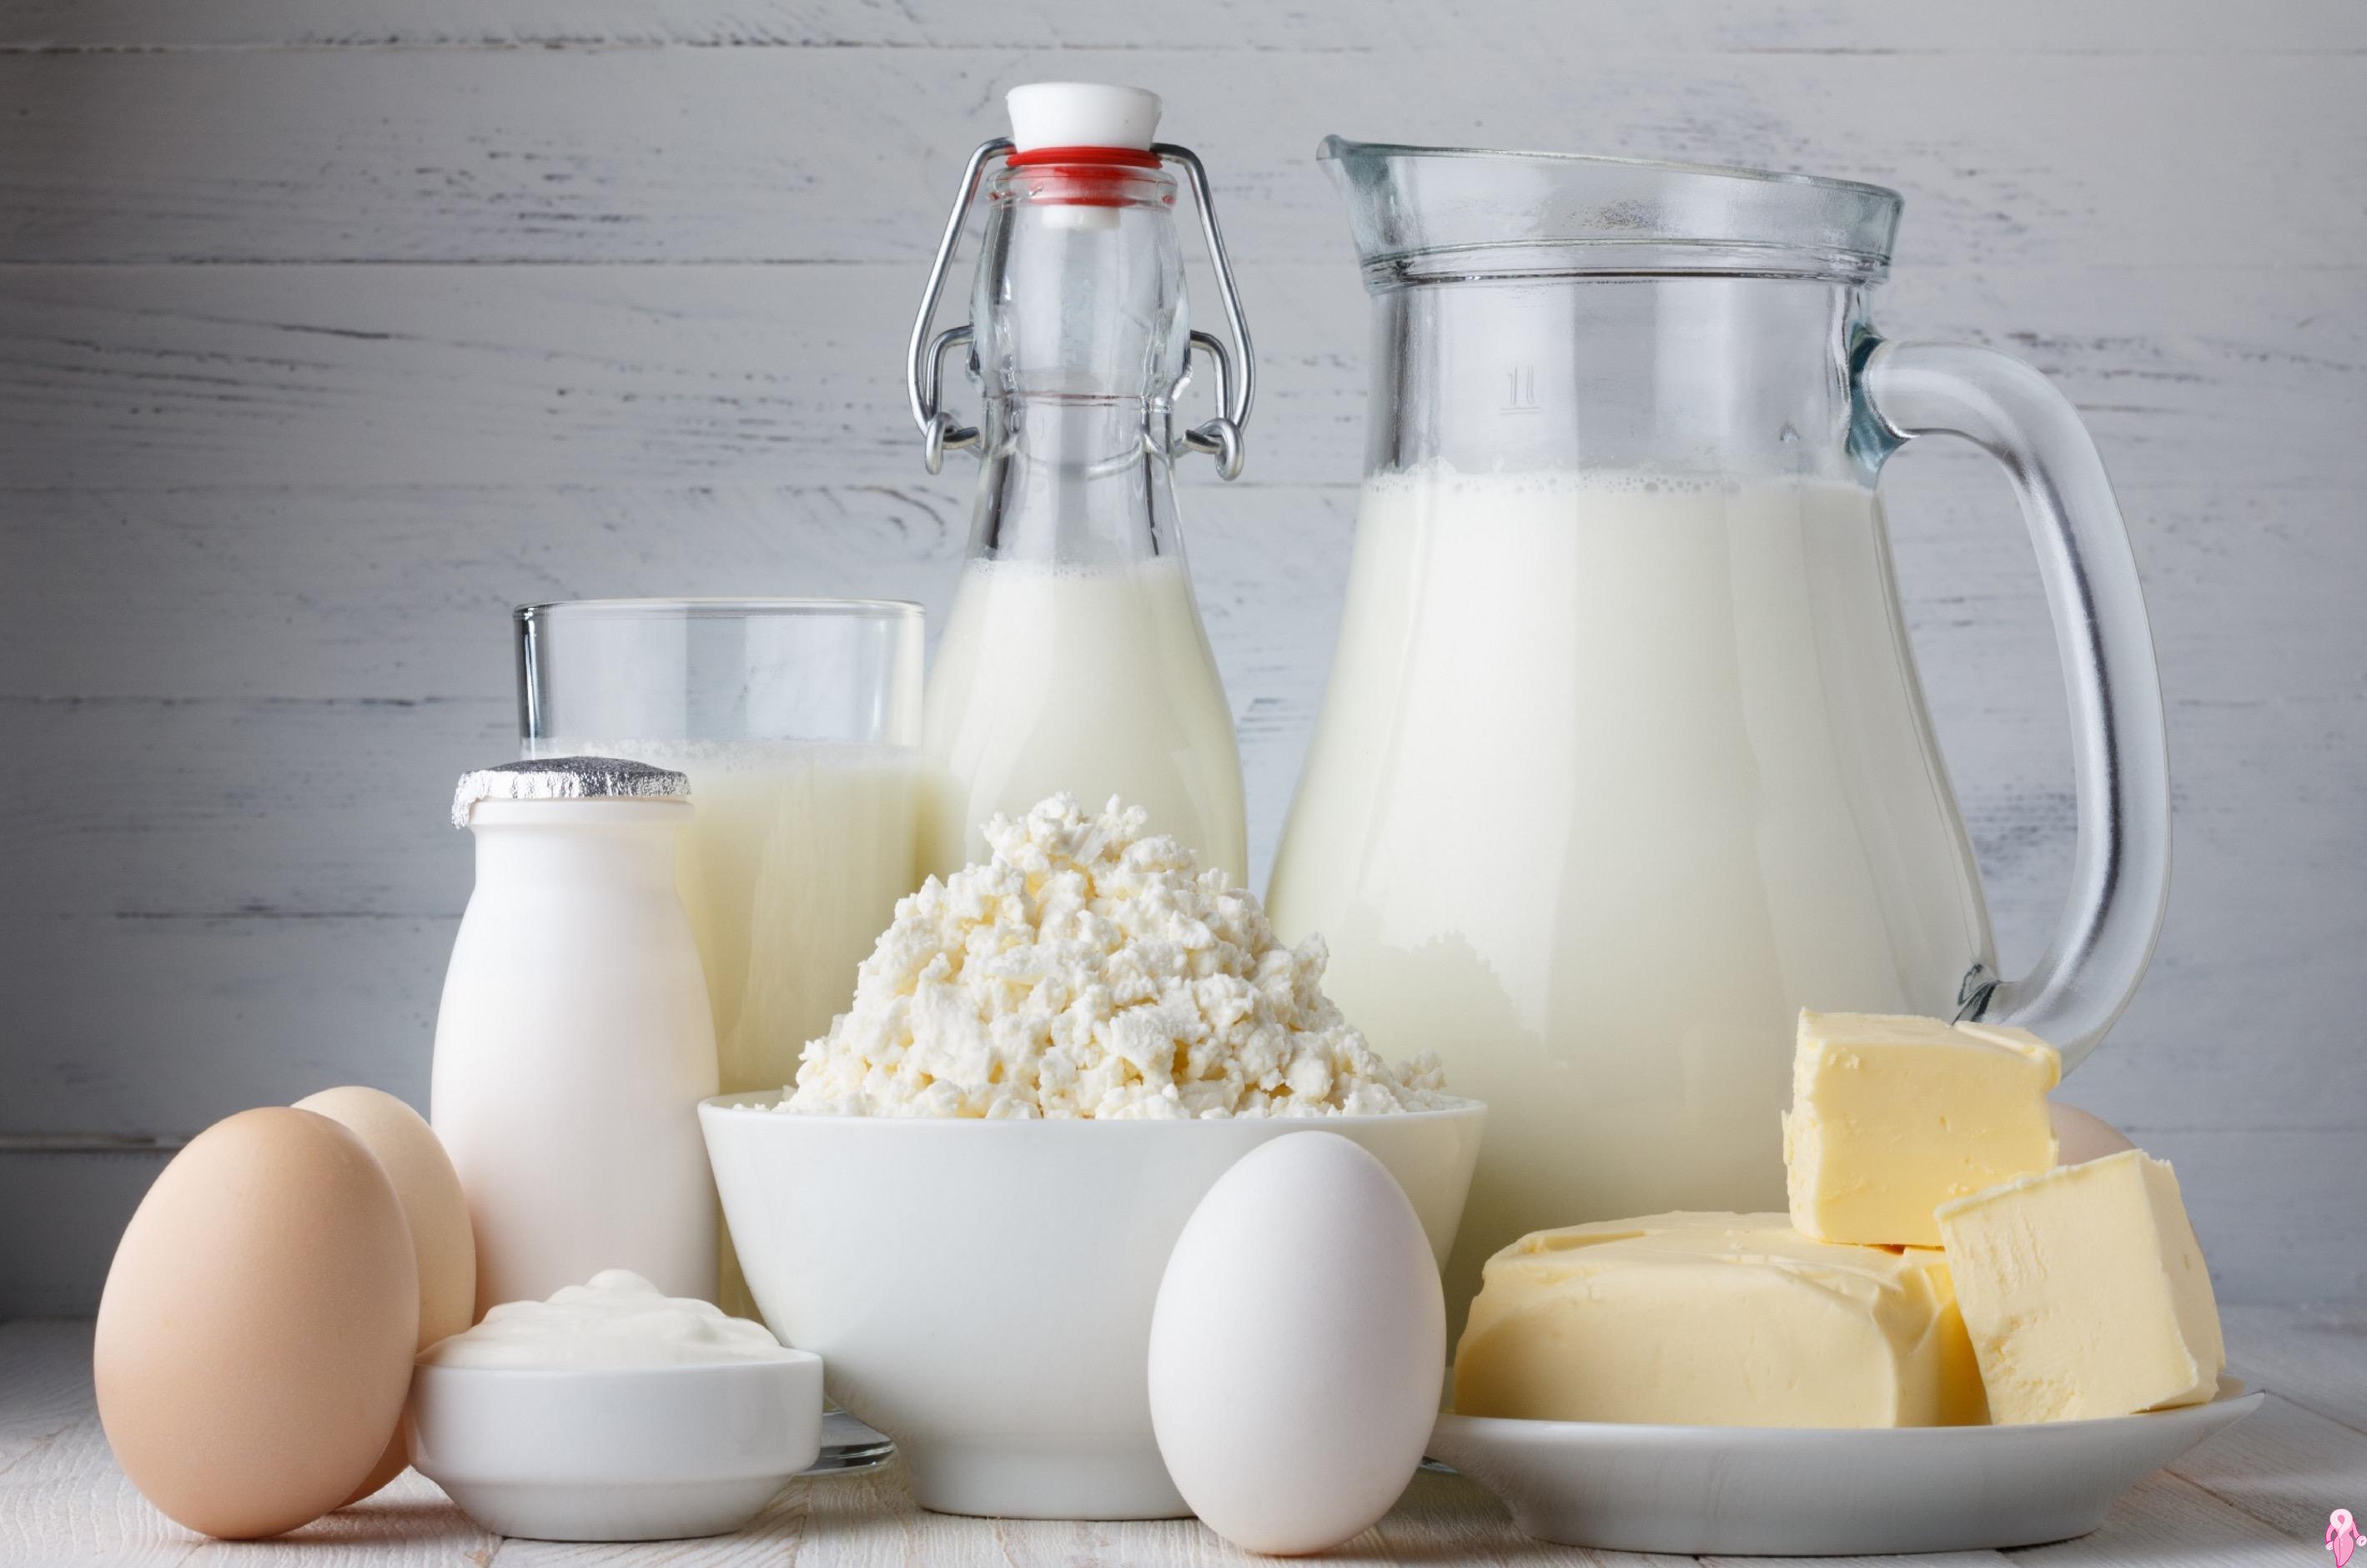 Laktoz Hakkında Bilinmesi Gerekenler